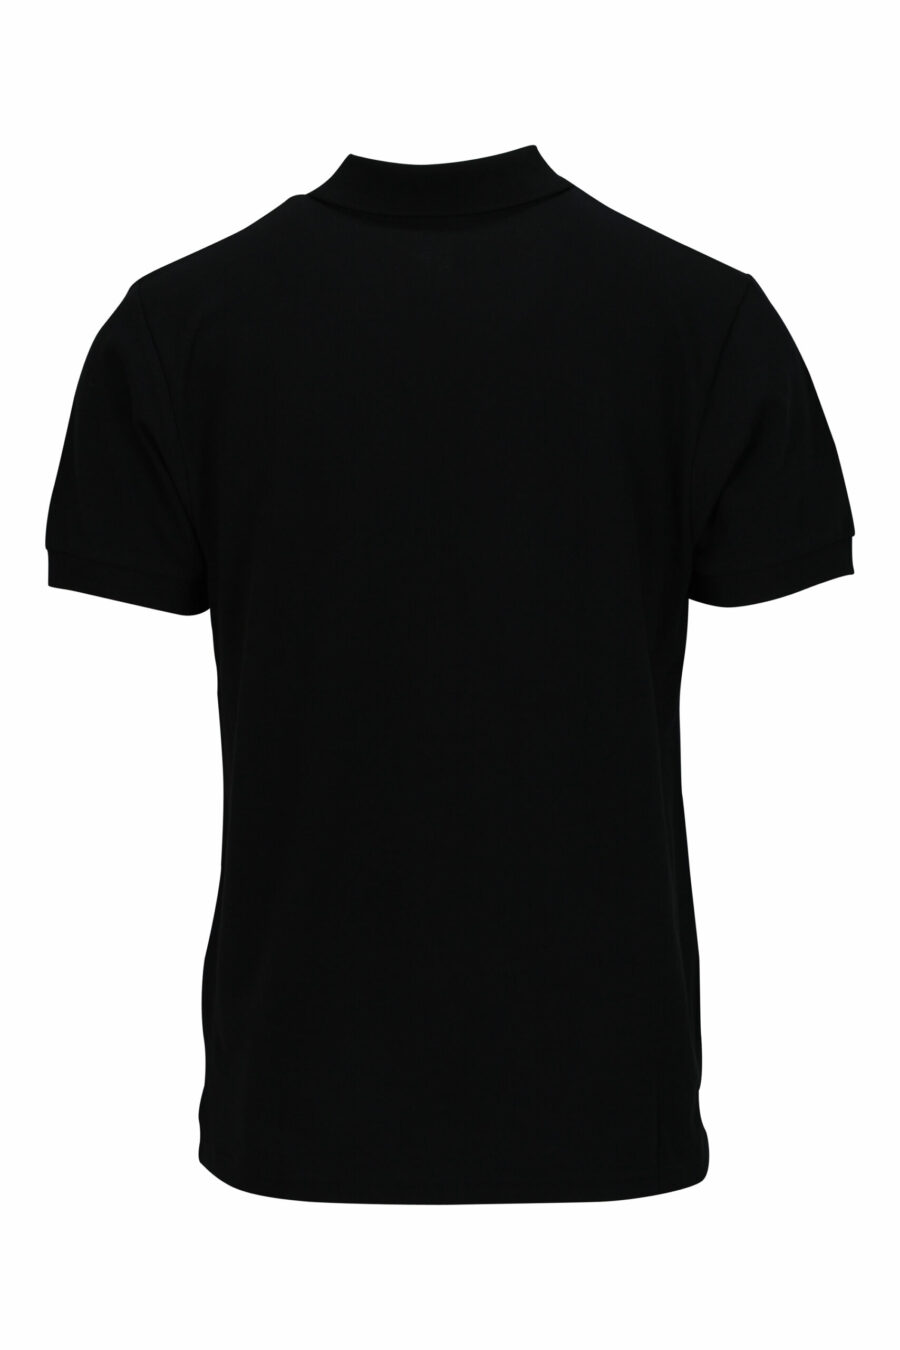 Schwarzes Poloshirt mit mehrfarbigem Mini-Logo - 667113674803 1 skaliert